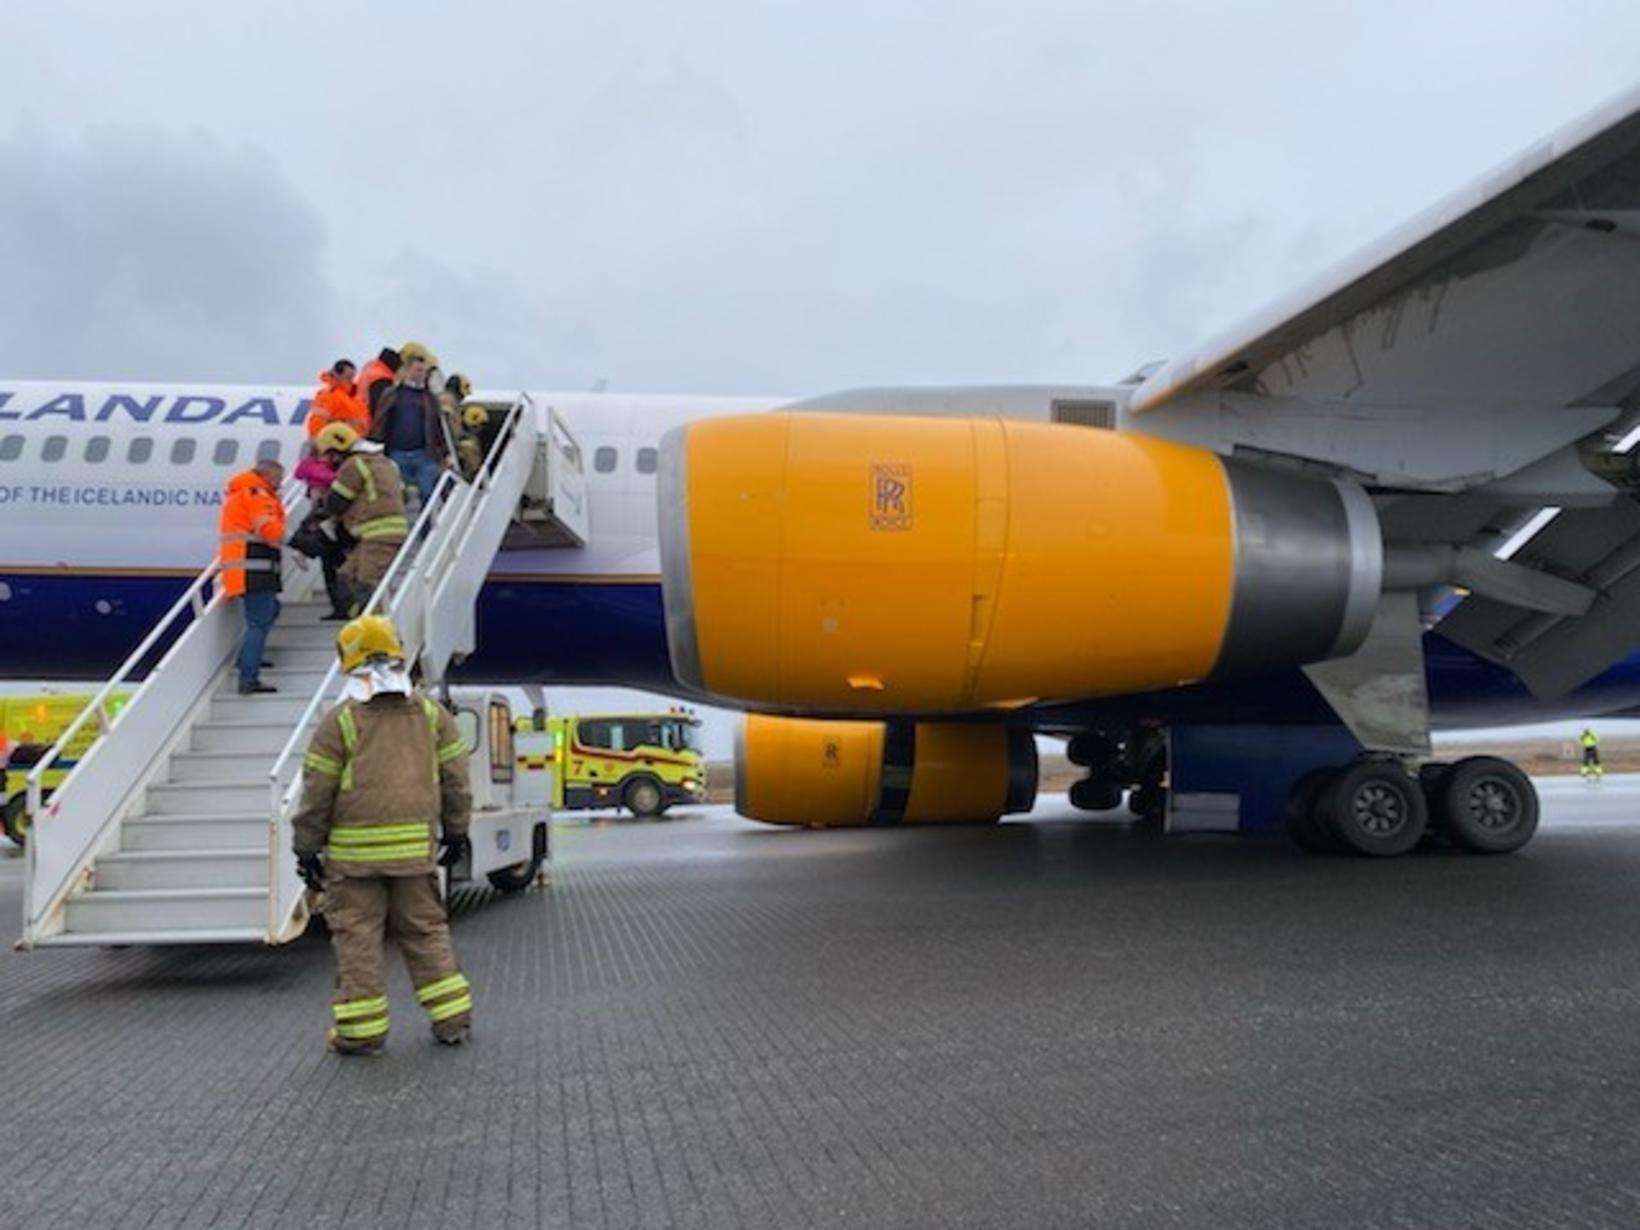 Boeing 757-200 авиакомпании Icelandair, выполнявшего рейс 529, произошло разрушение правой основной стойки шасси после посадки на взлетно-посадочной полосе 10 в Международном аэропорту Кефлавик, Исландия.